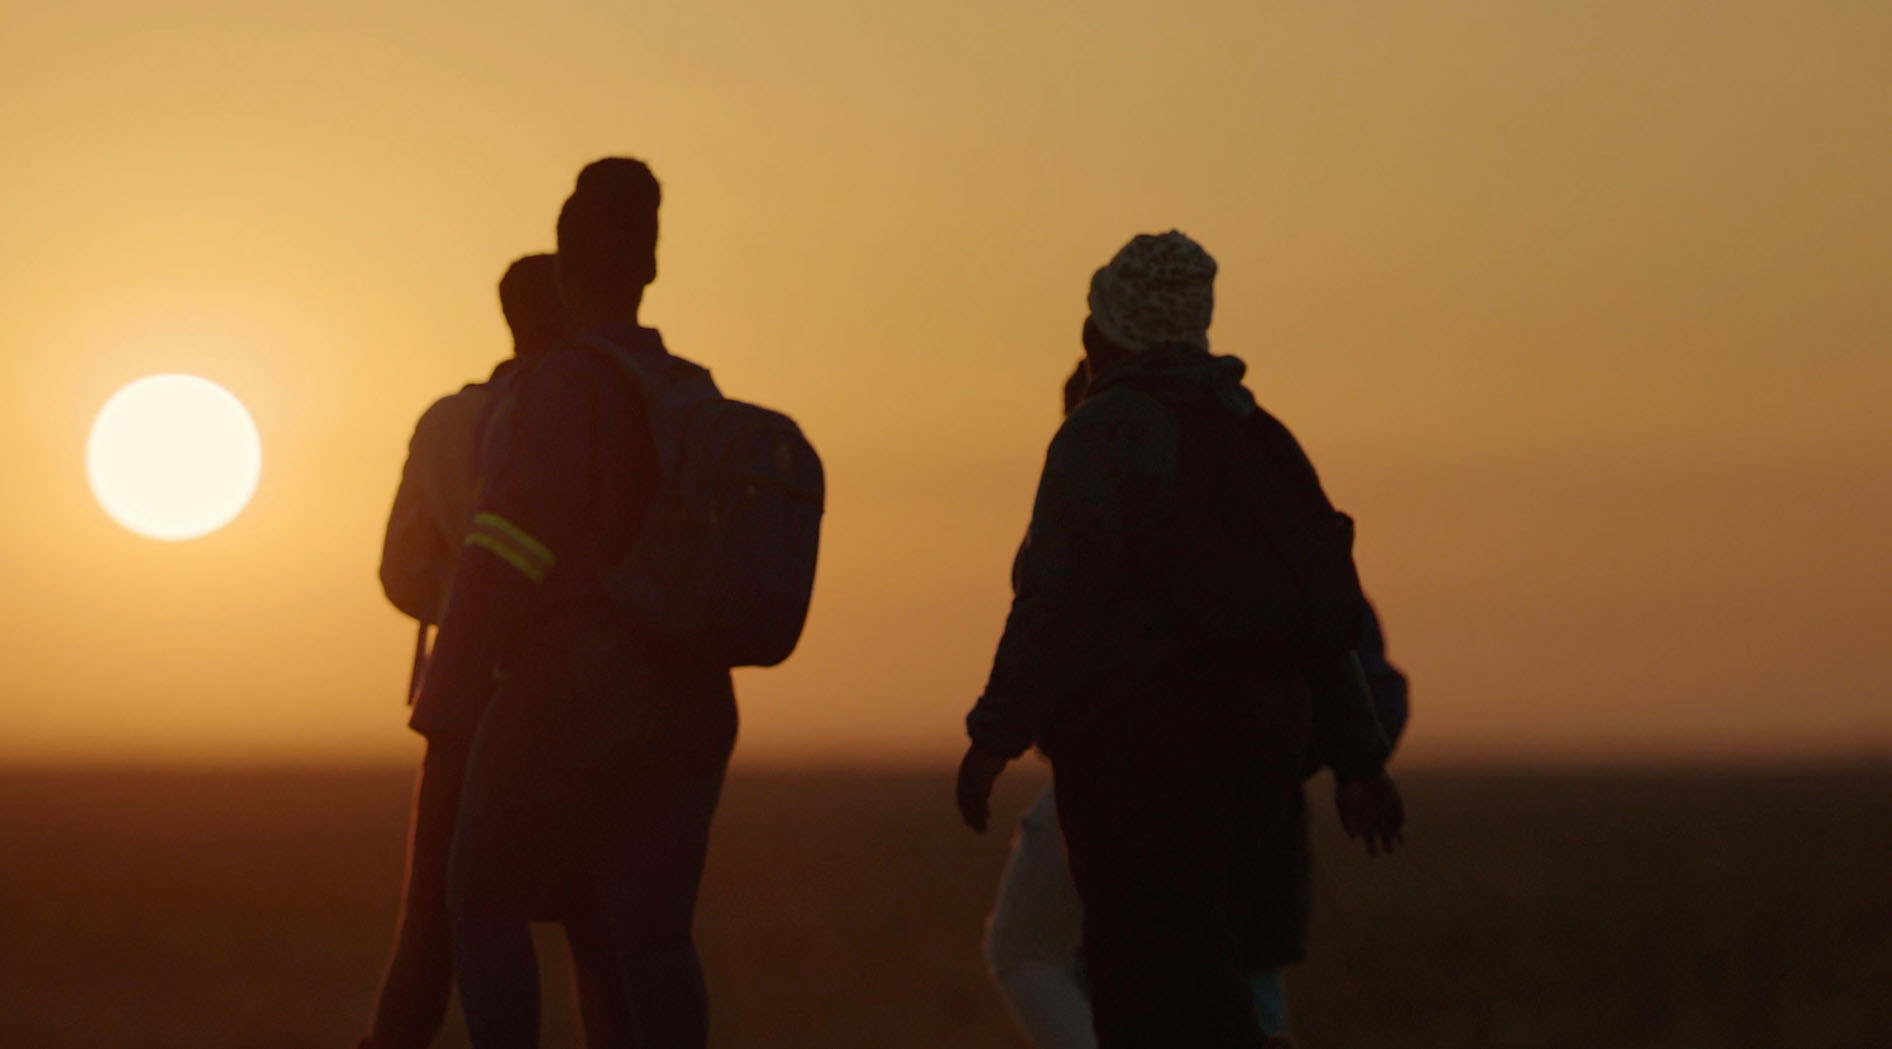 Two people walk toward a setting sun in Africa